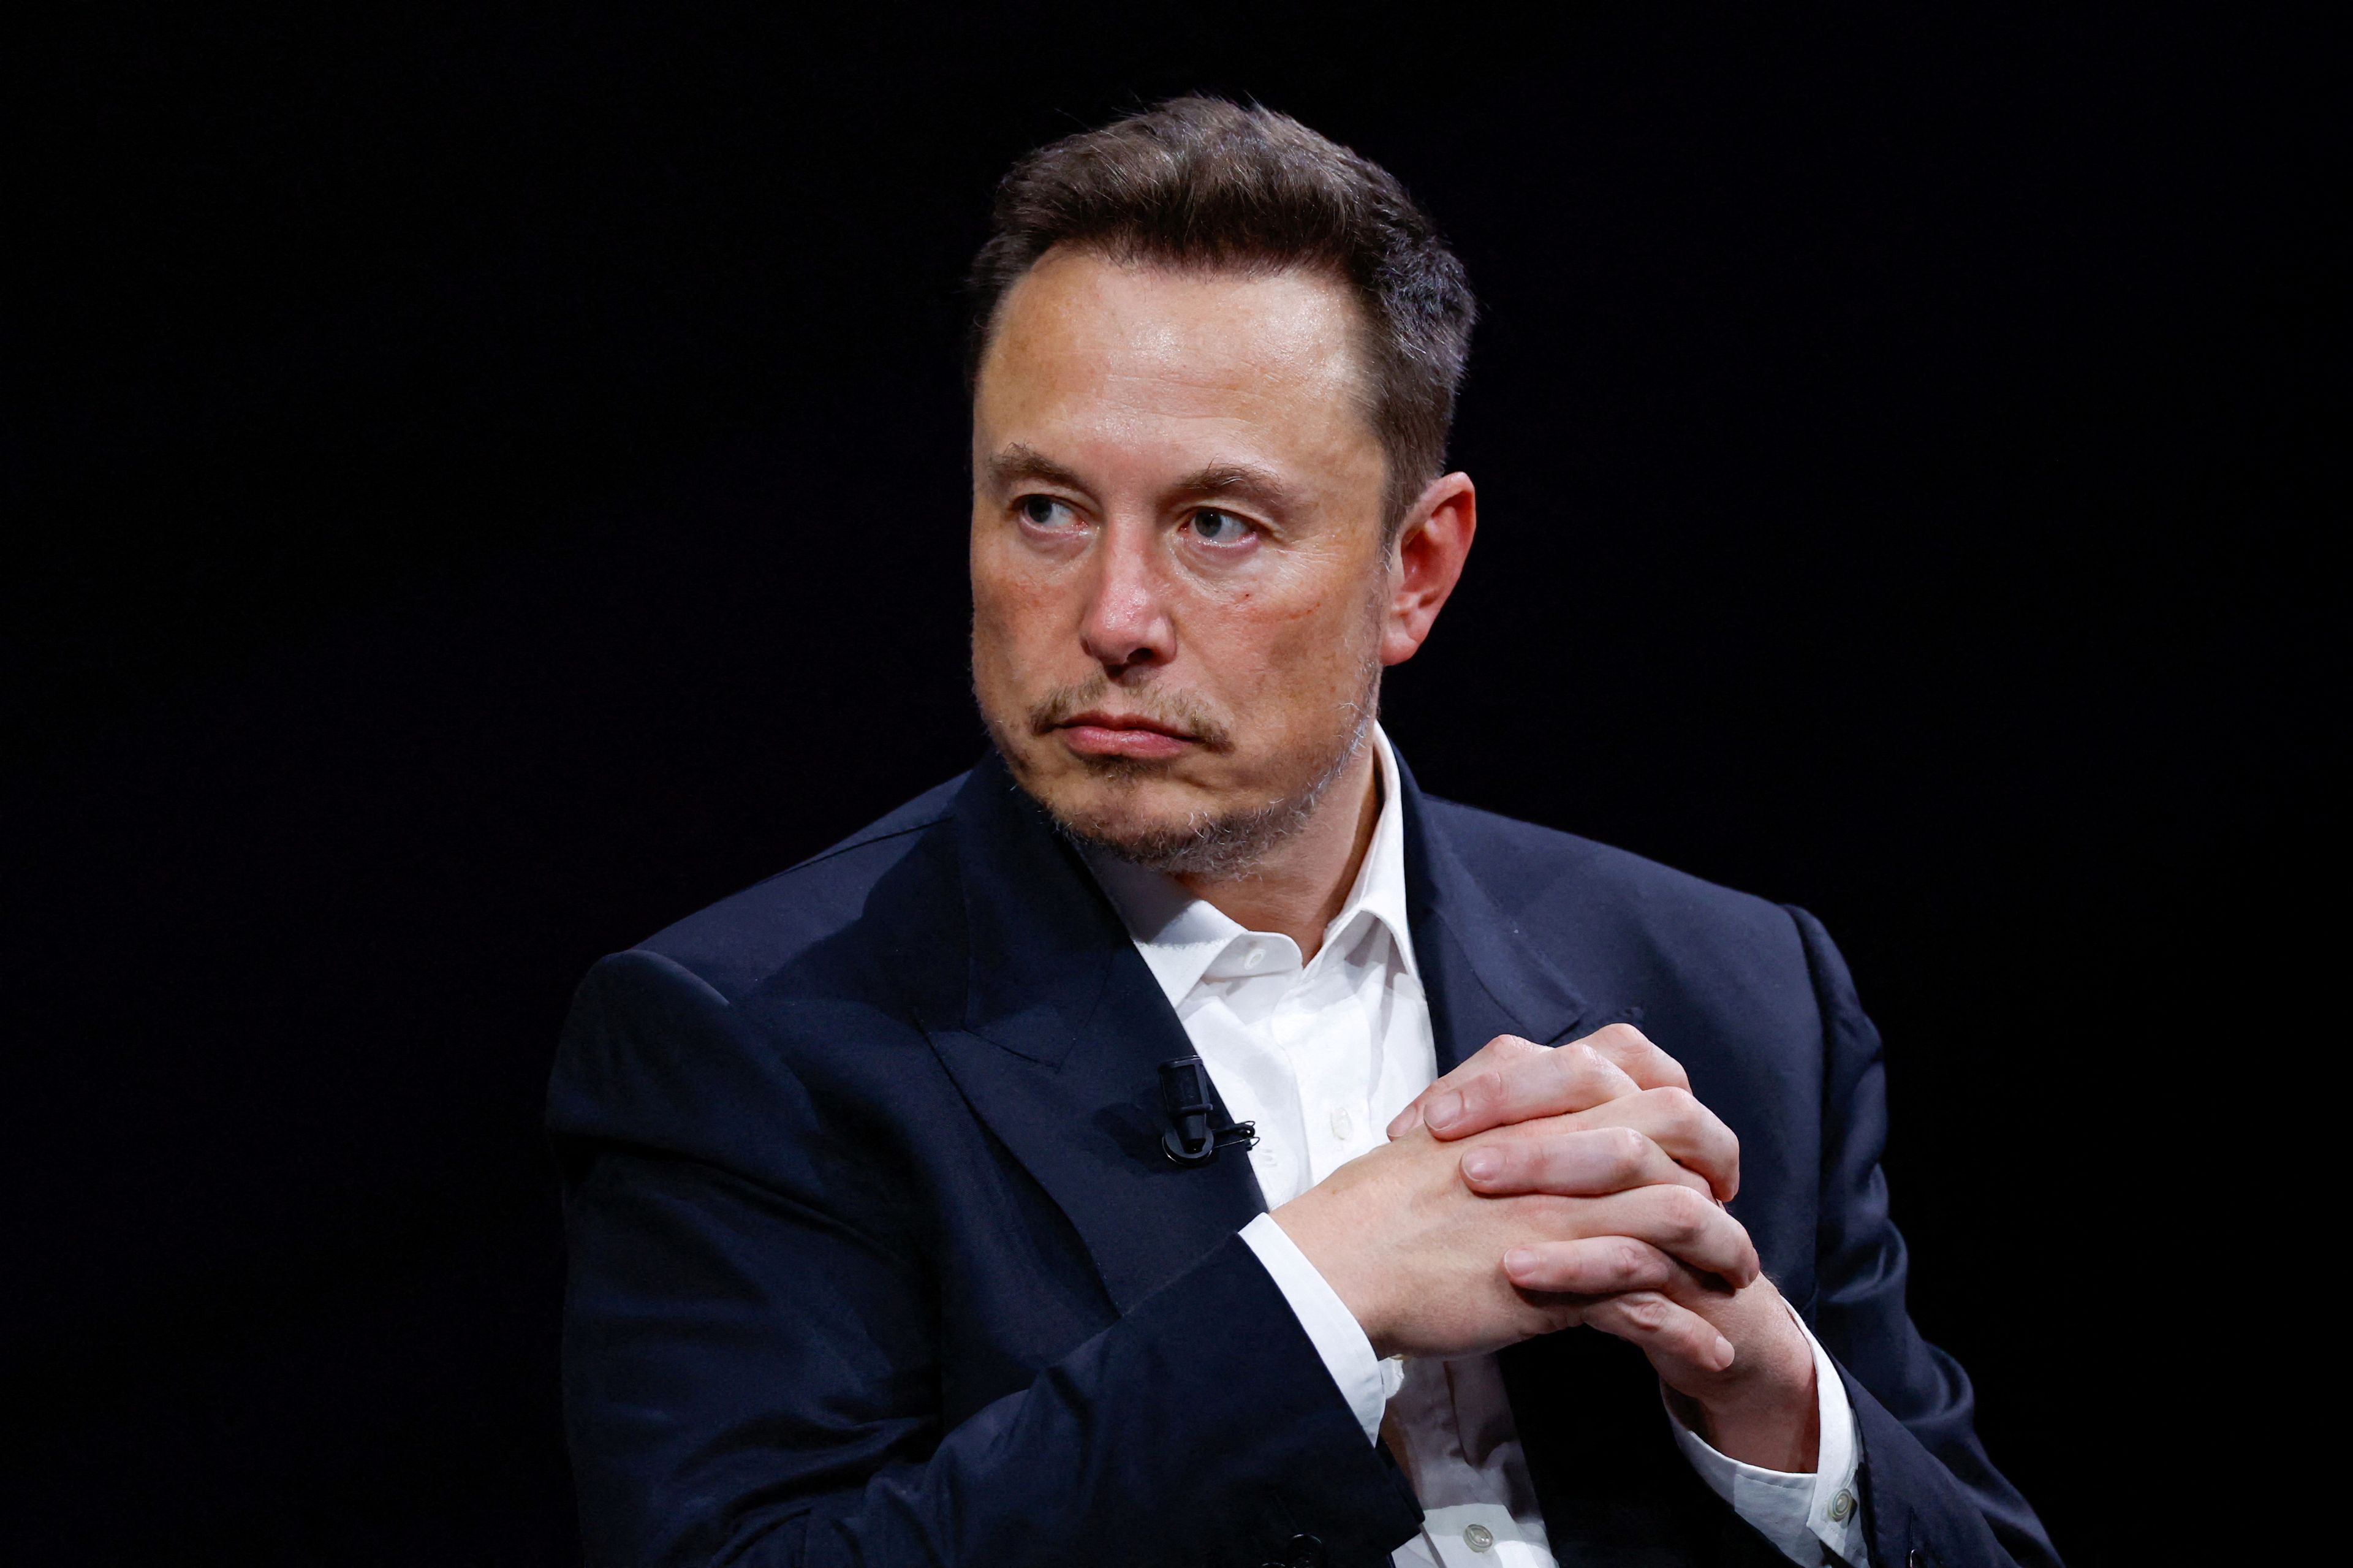 Elon Musk en un evento